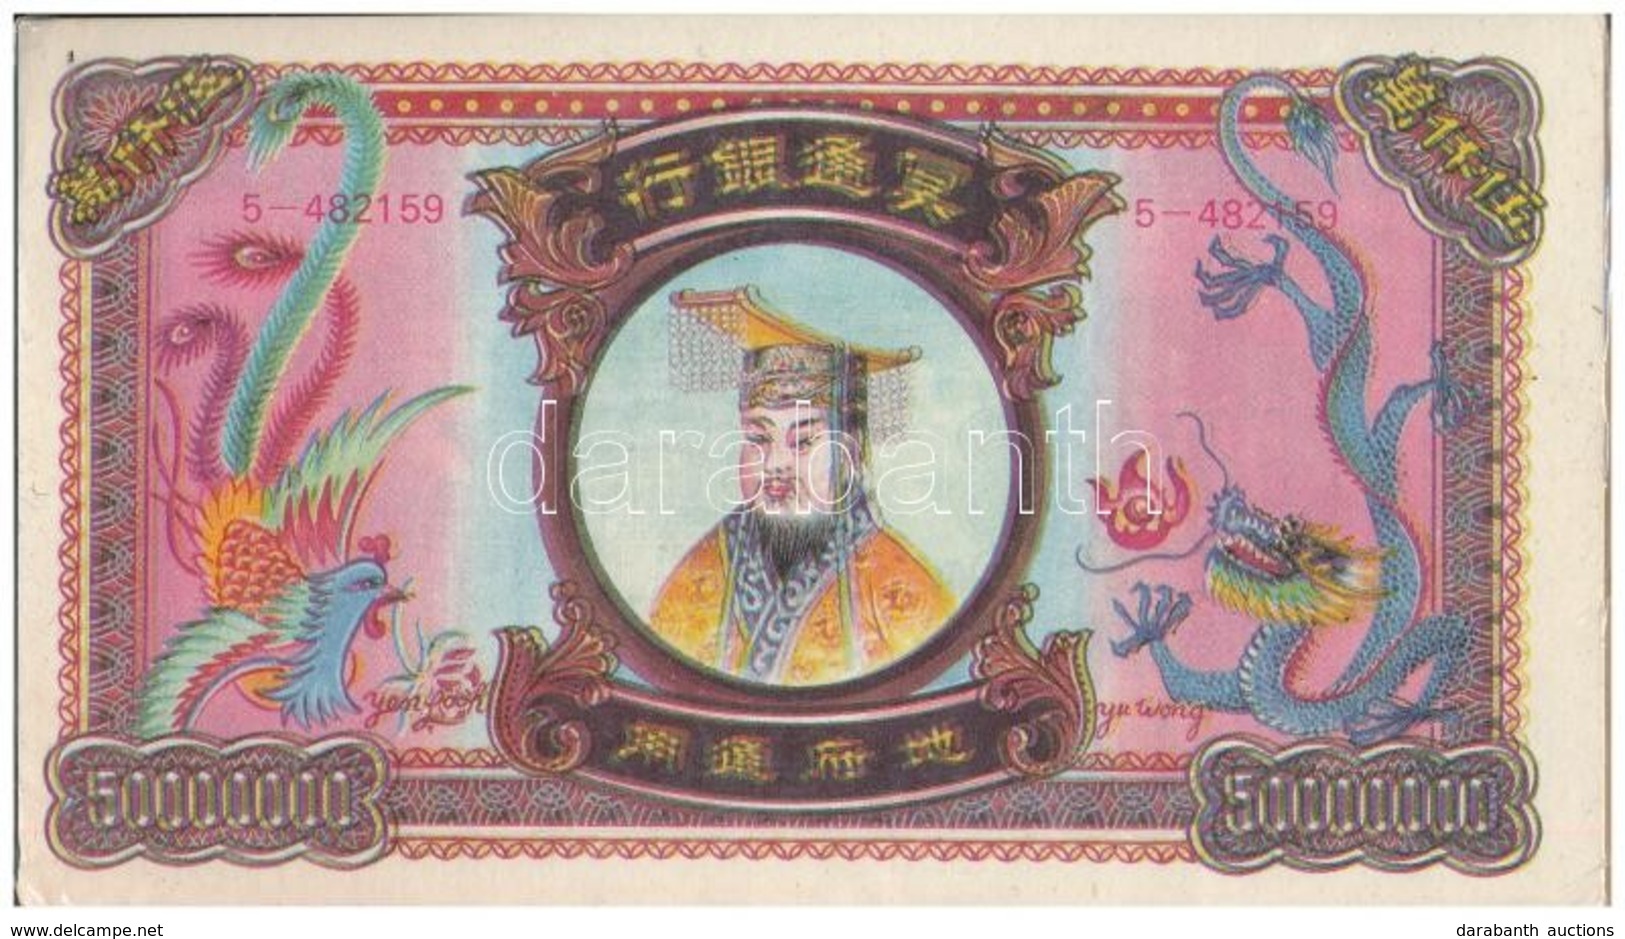 Kína DN Égetési Pénz 50.000.000 Névértékben (150x) Eredeti, Kicsit Sérült Csomagolásban T:I China ND Hell Banknotes In O - Ohne Zuordnung